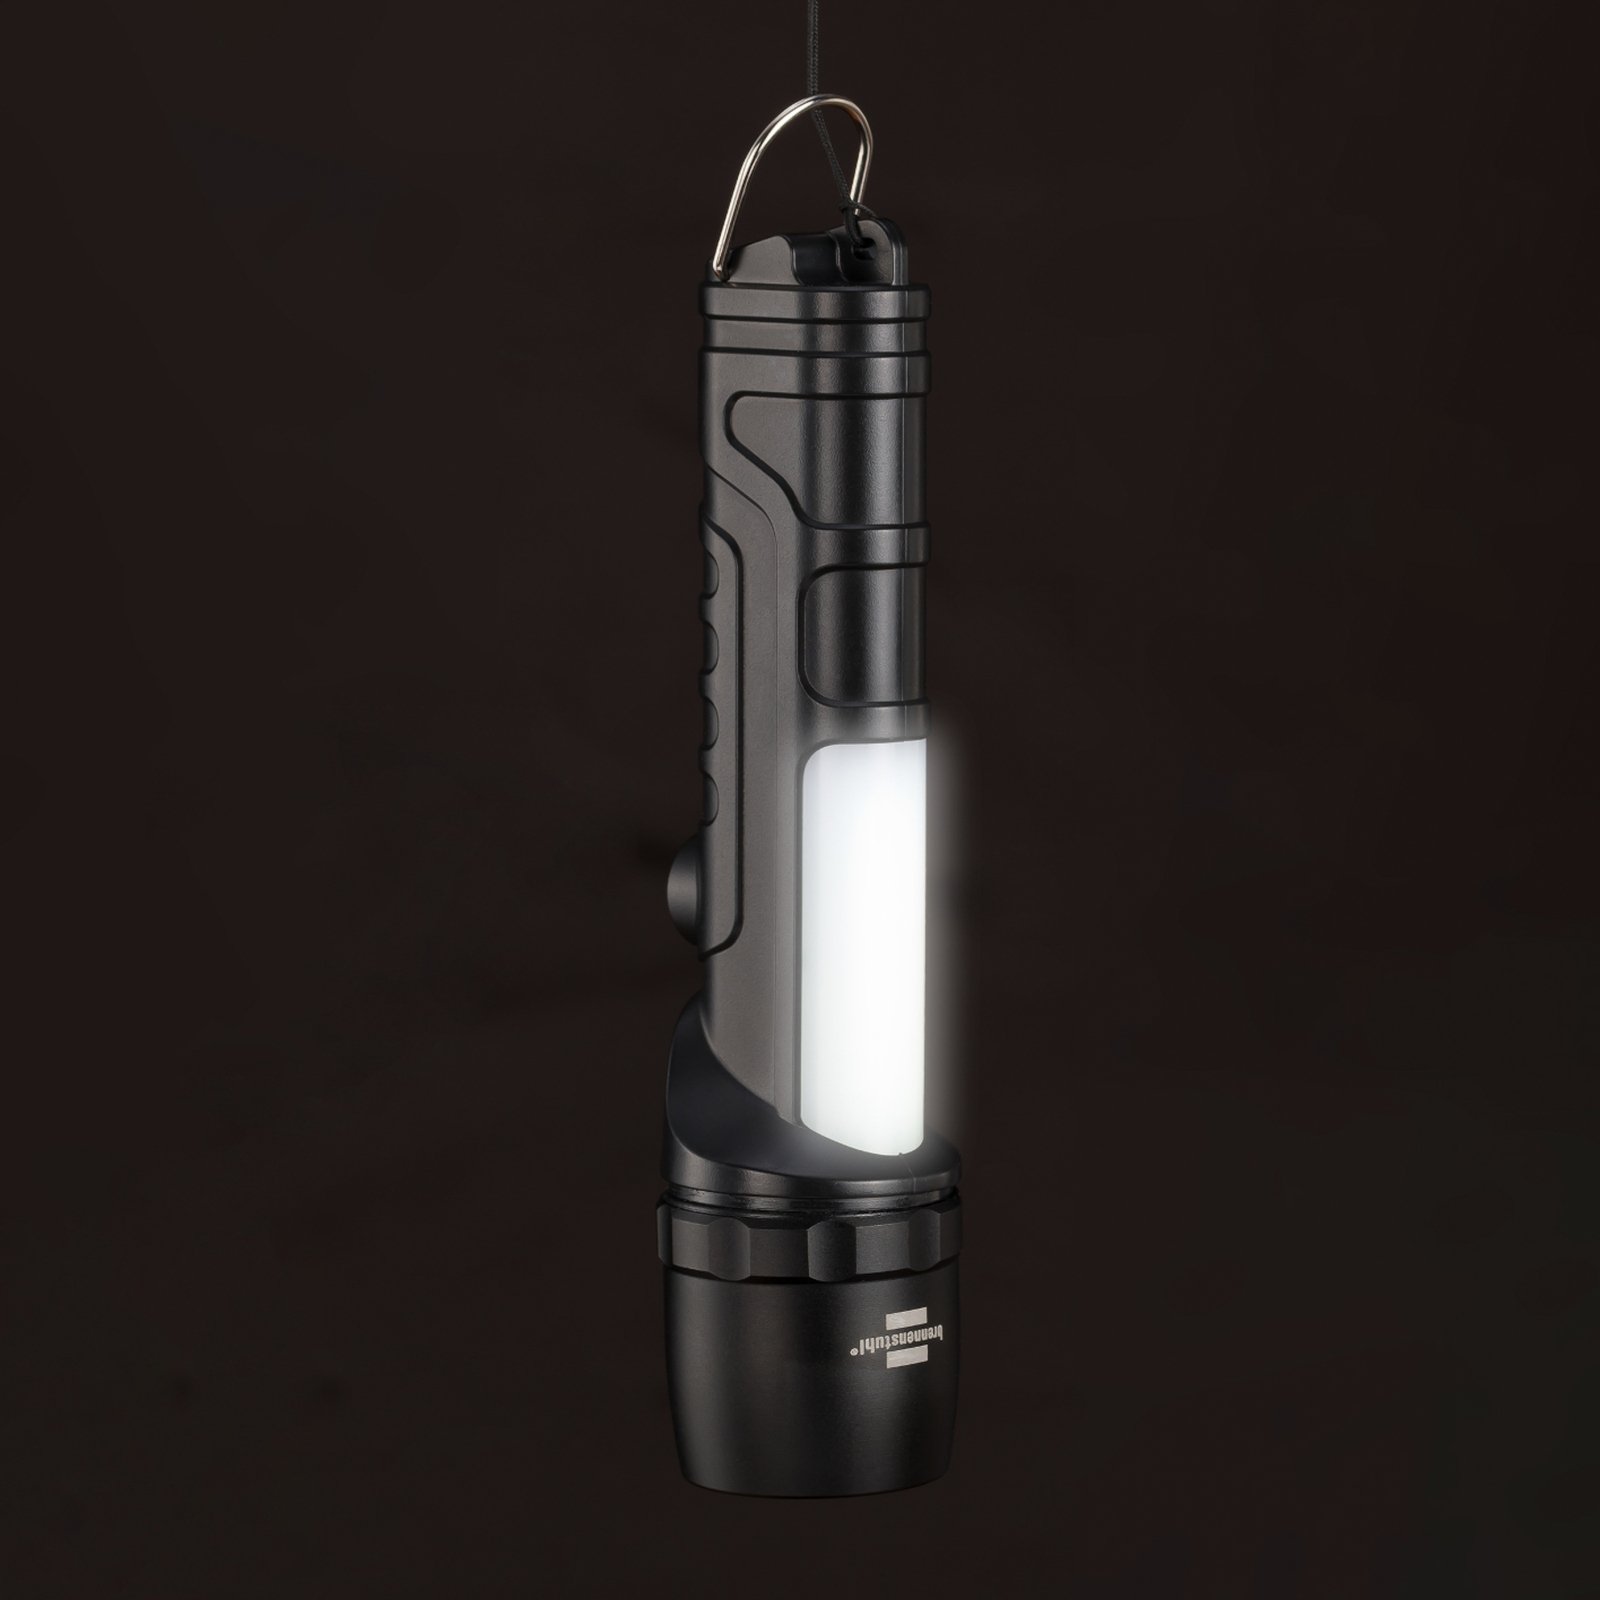 LED-Taschenlampe LuxPremium LED-Flashlight THL 300